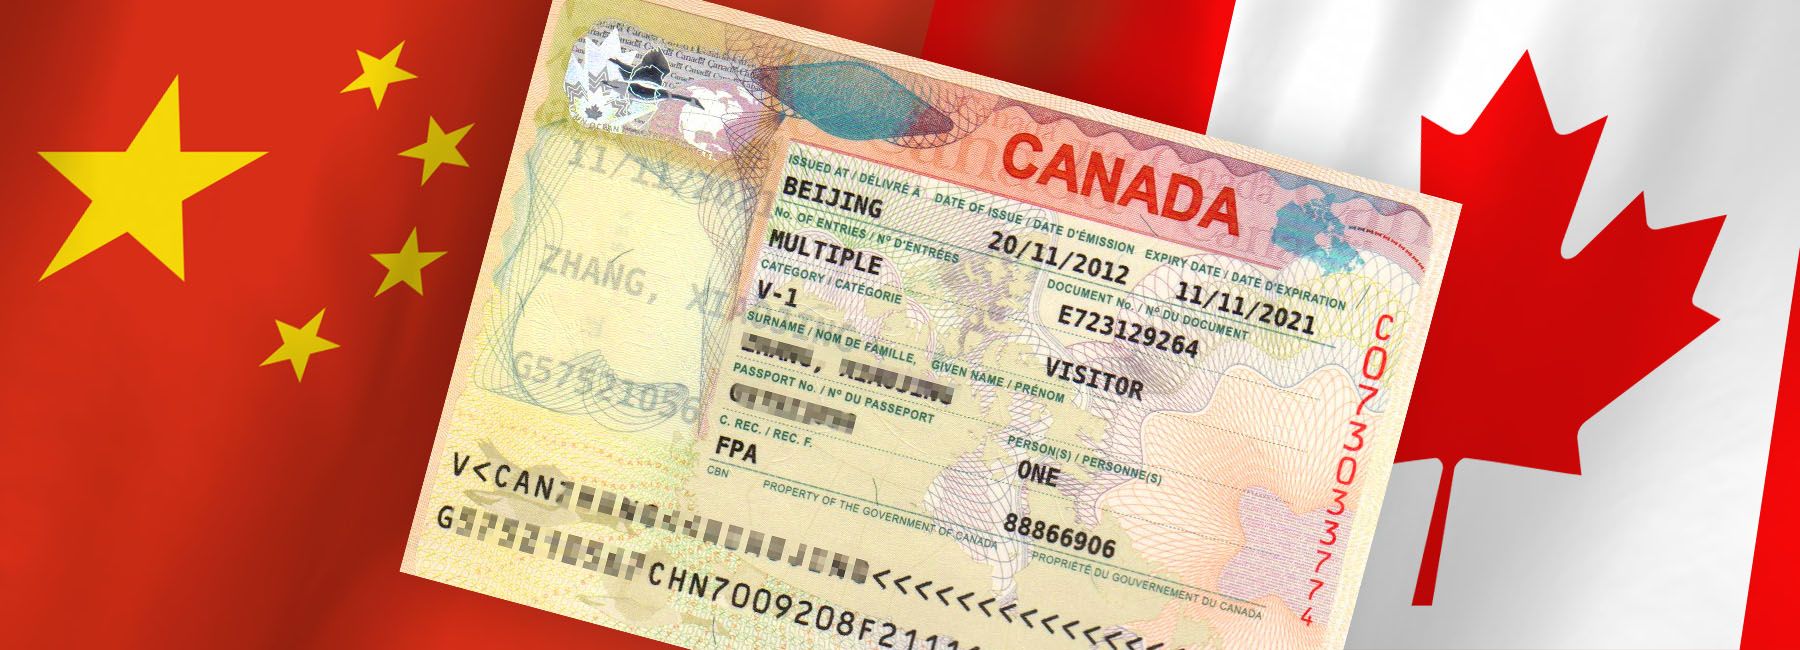 Singapore 2 - Canada Visa IN